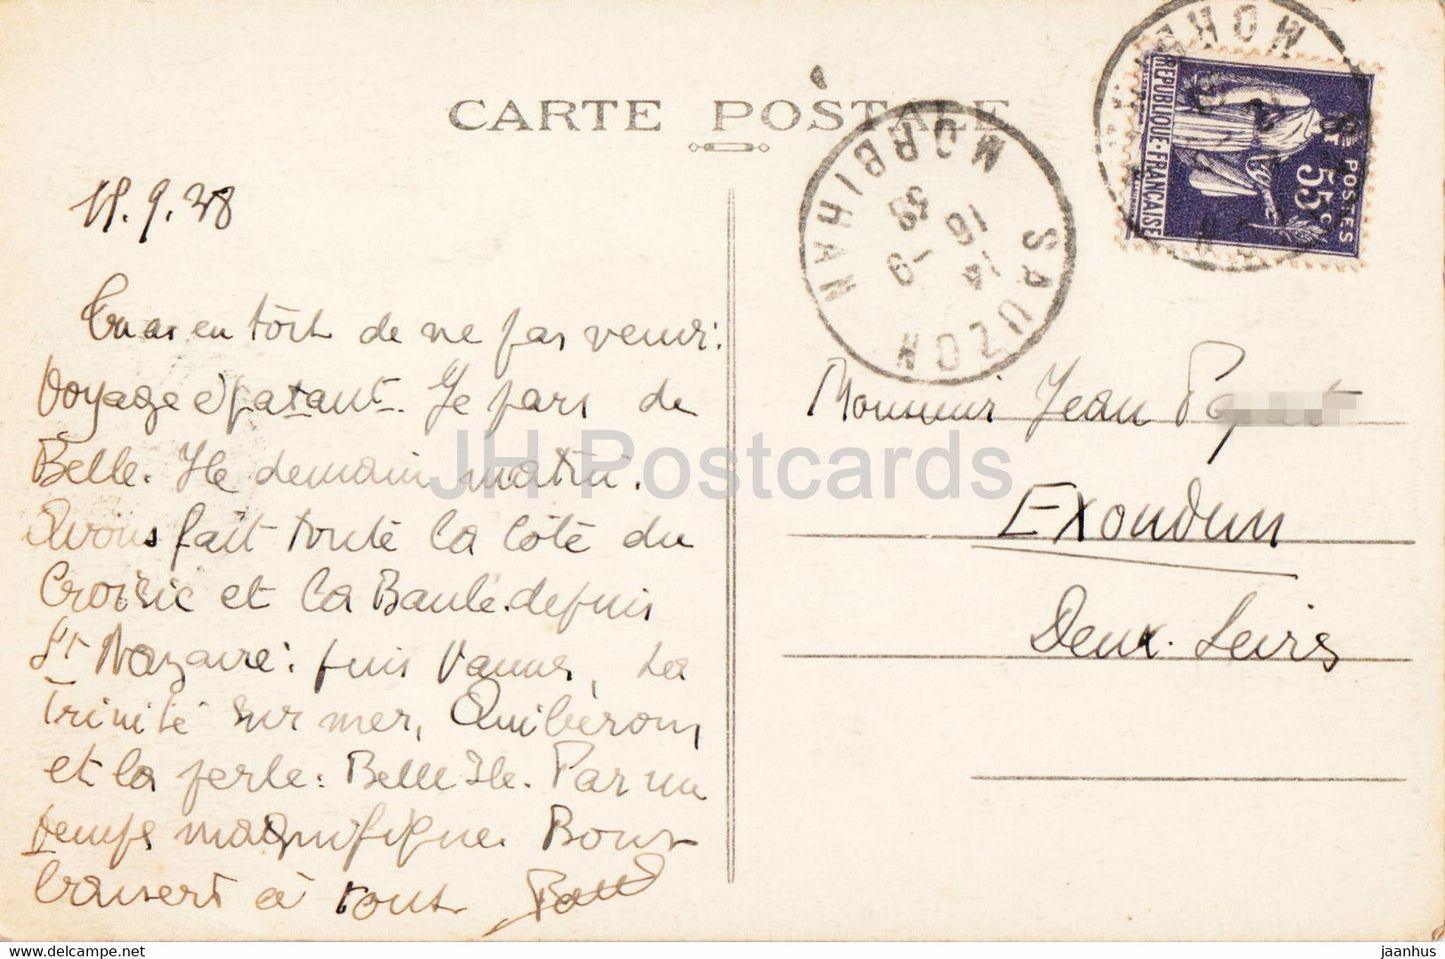 Belle Ile en Mer - Pyramides de Port Coton - 15 - carte postale ancienne - 1938 - France - occasion